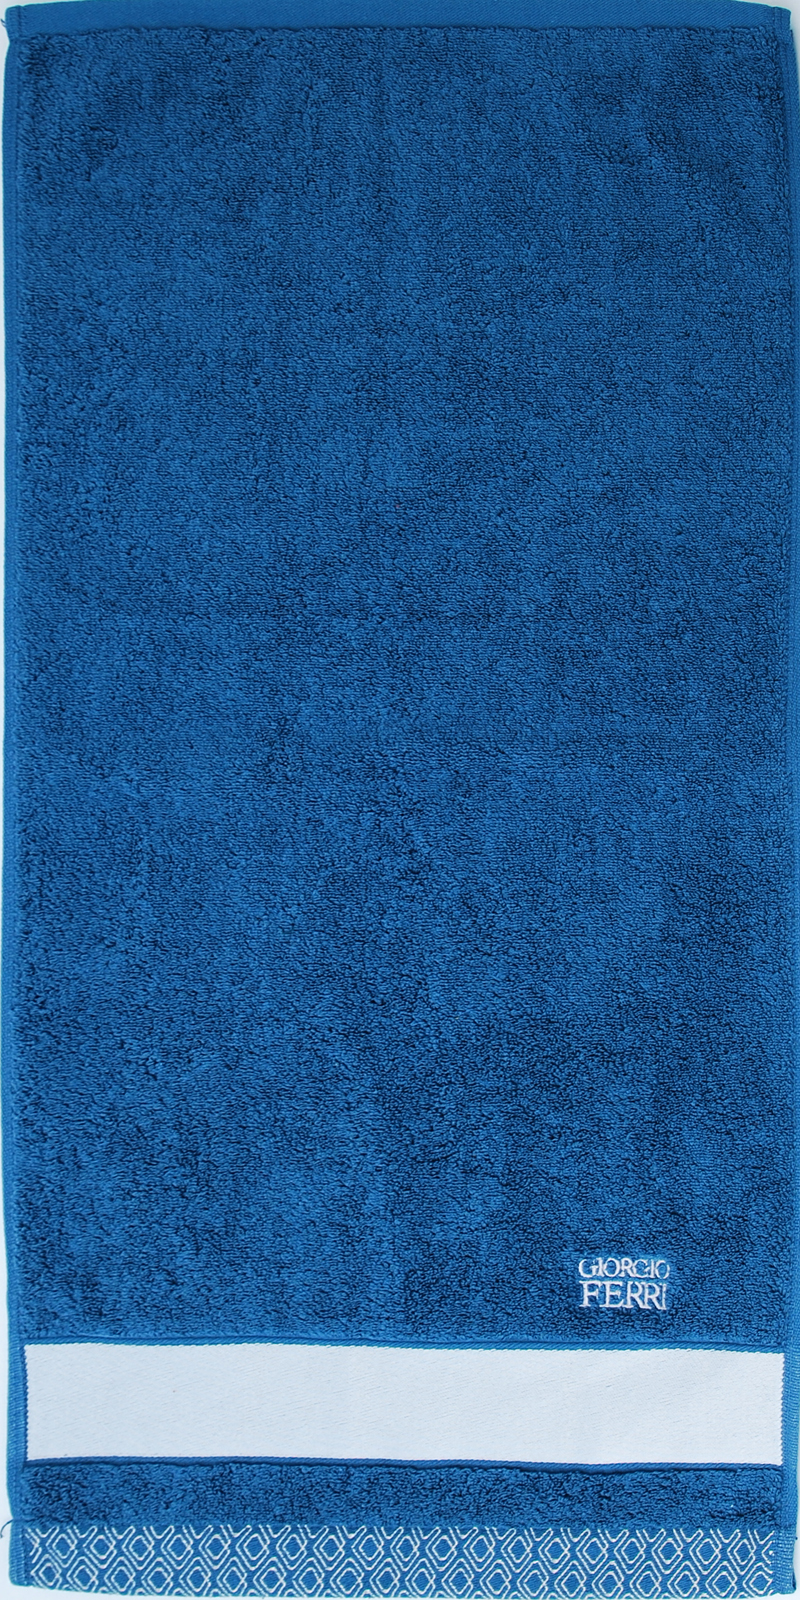 200-조르지오페리위브-블루전면-축소.jpg